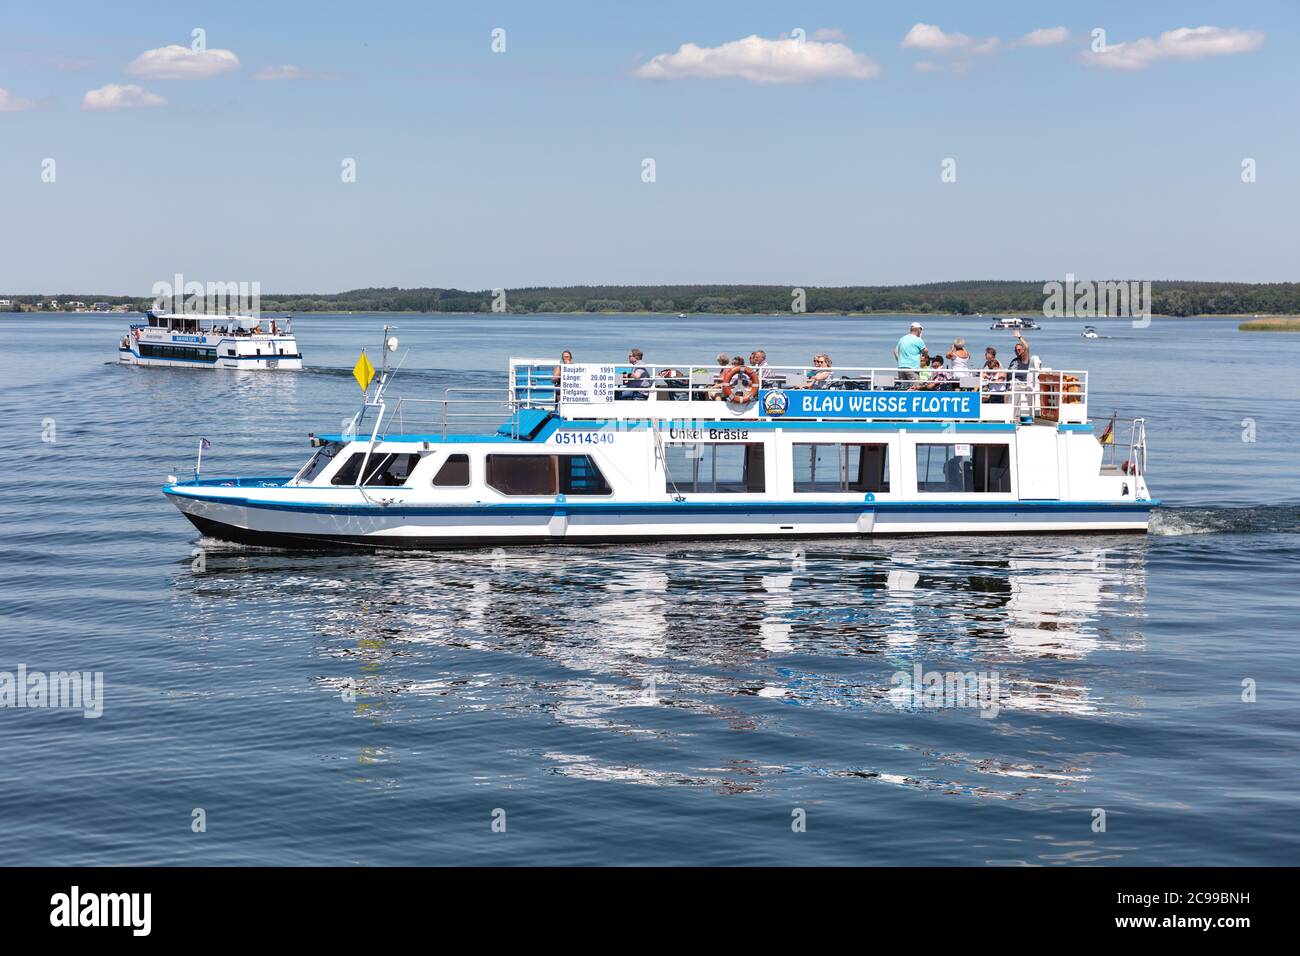 Excursión en barco UNKEL BRÄSIG de Blau Weisse Flotte en el lago Plau, Alemania Foto de stock